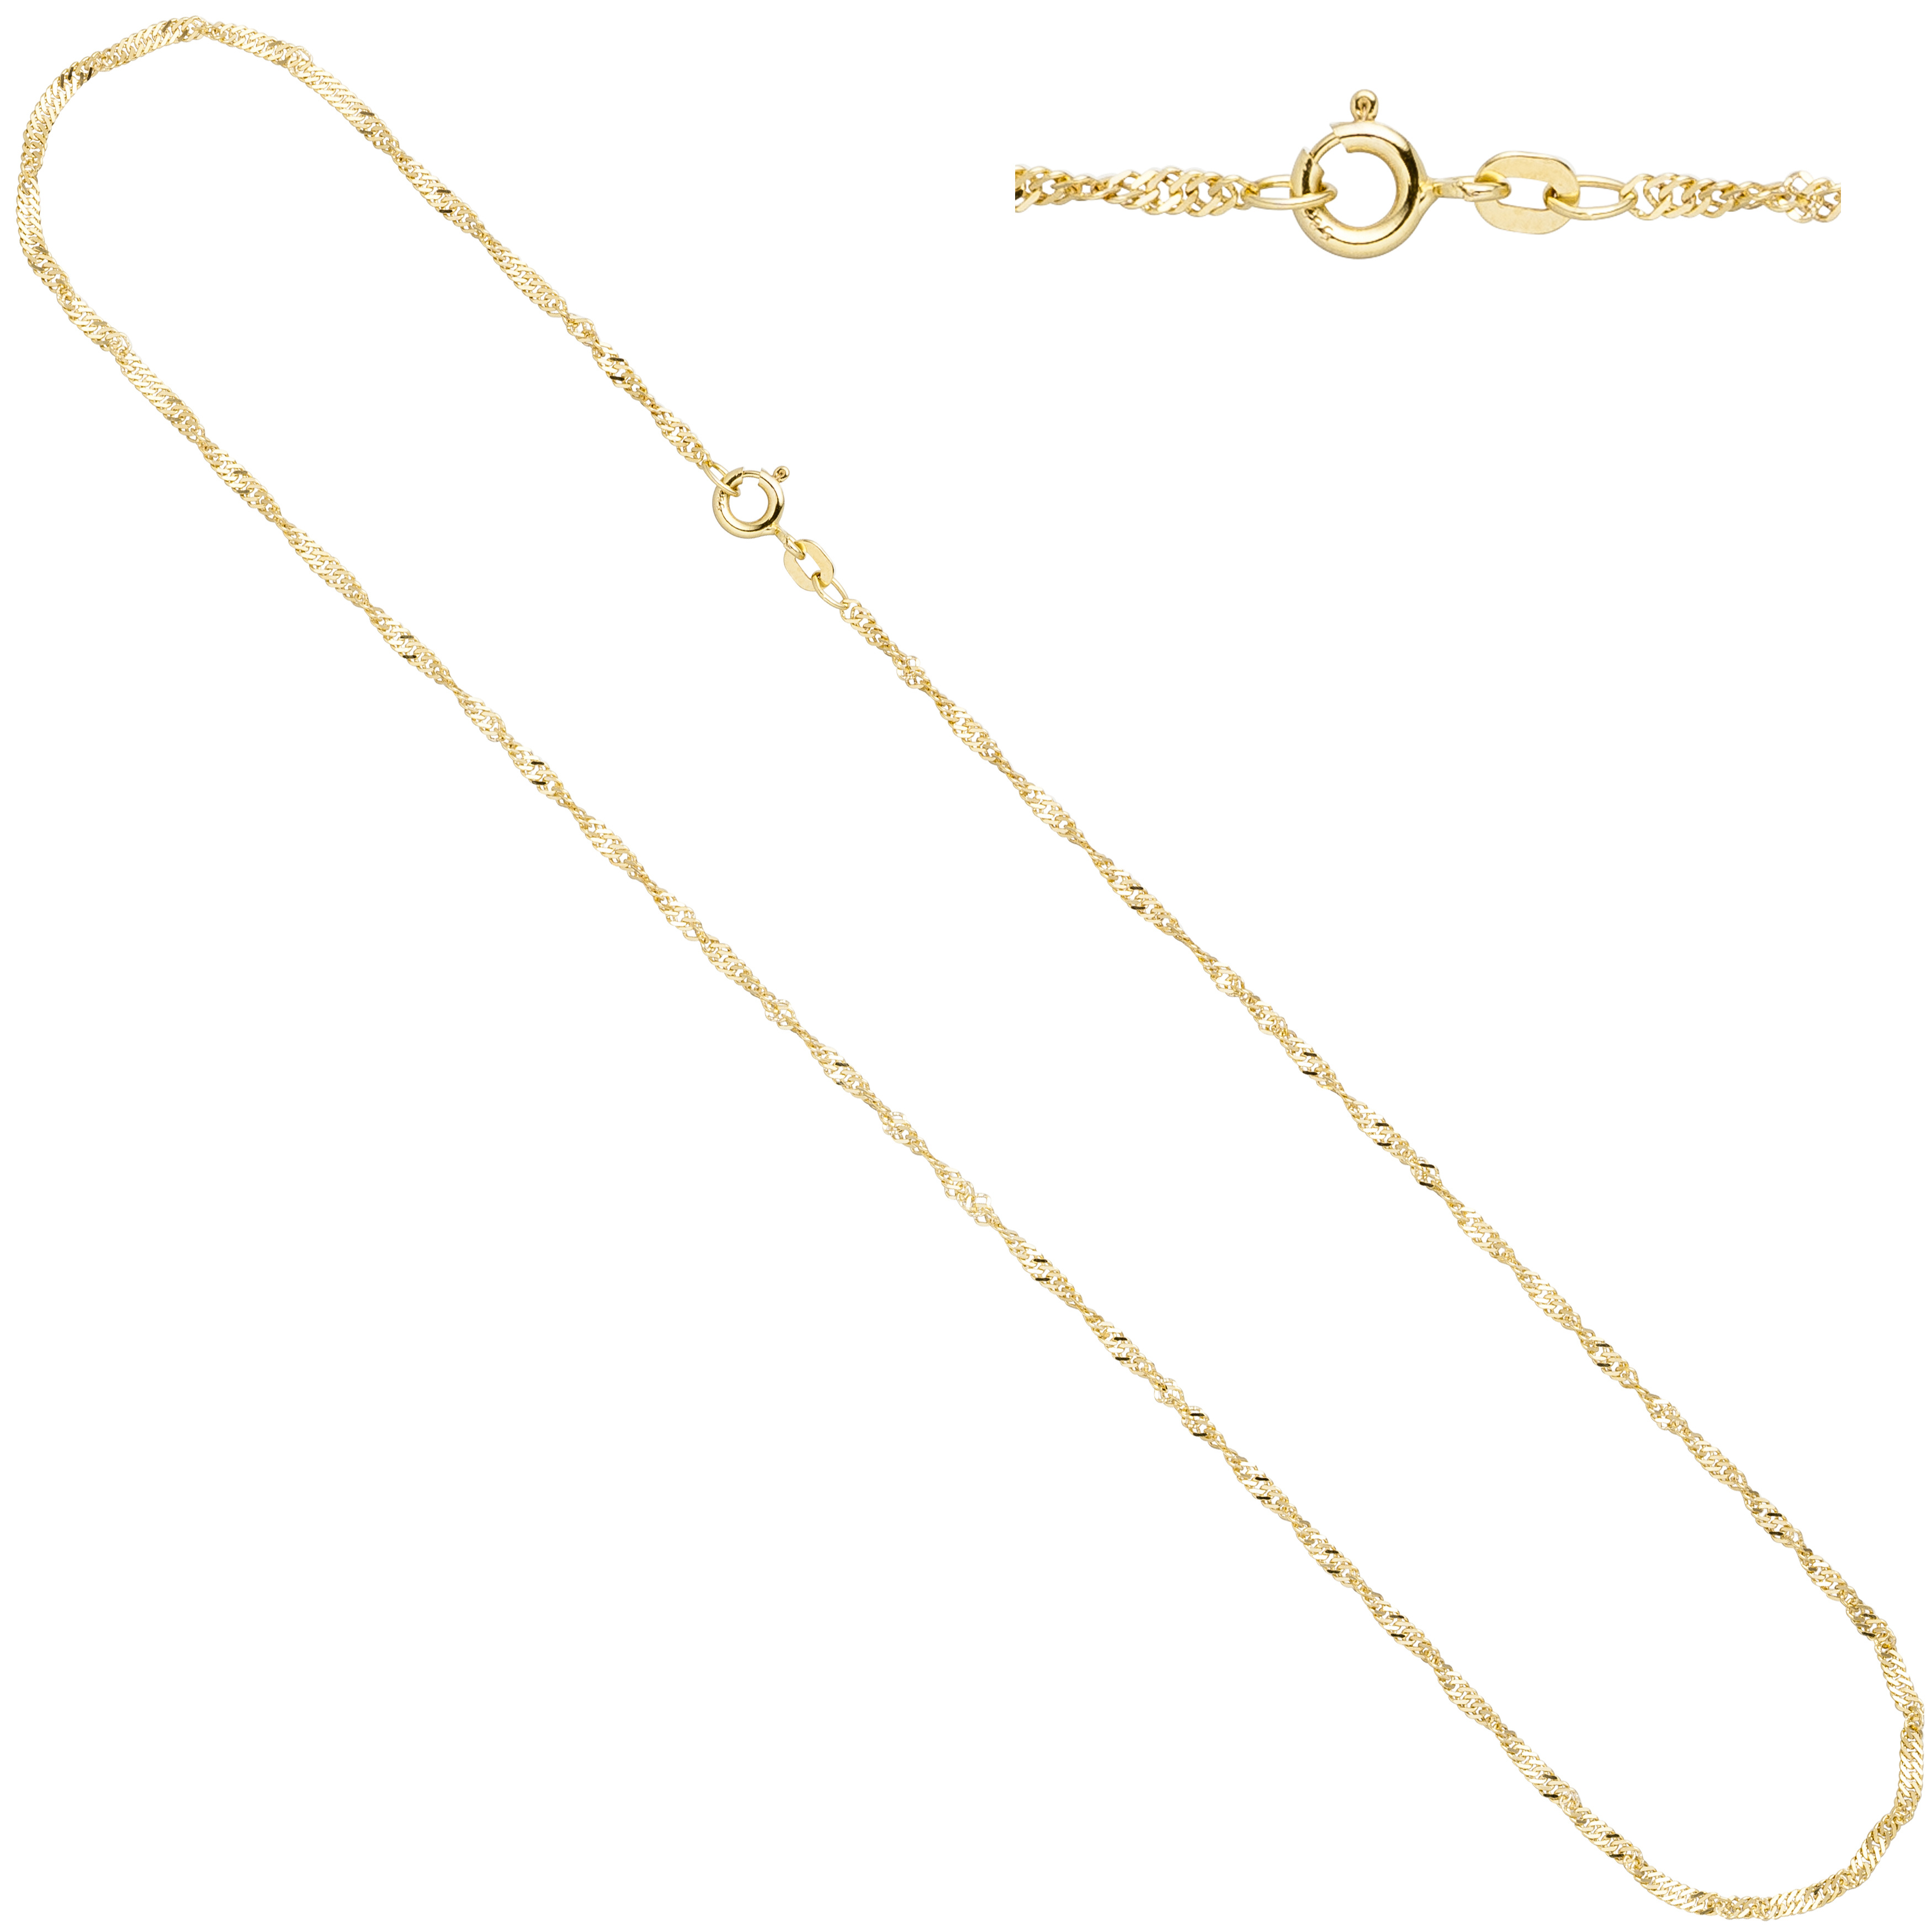 Singapurkette 585 Gelbgold 1,8 mm 42 cm Gold Kette Halskette Federring